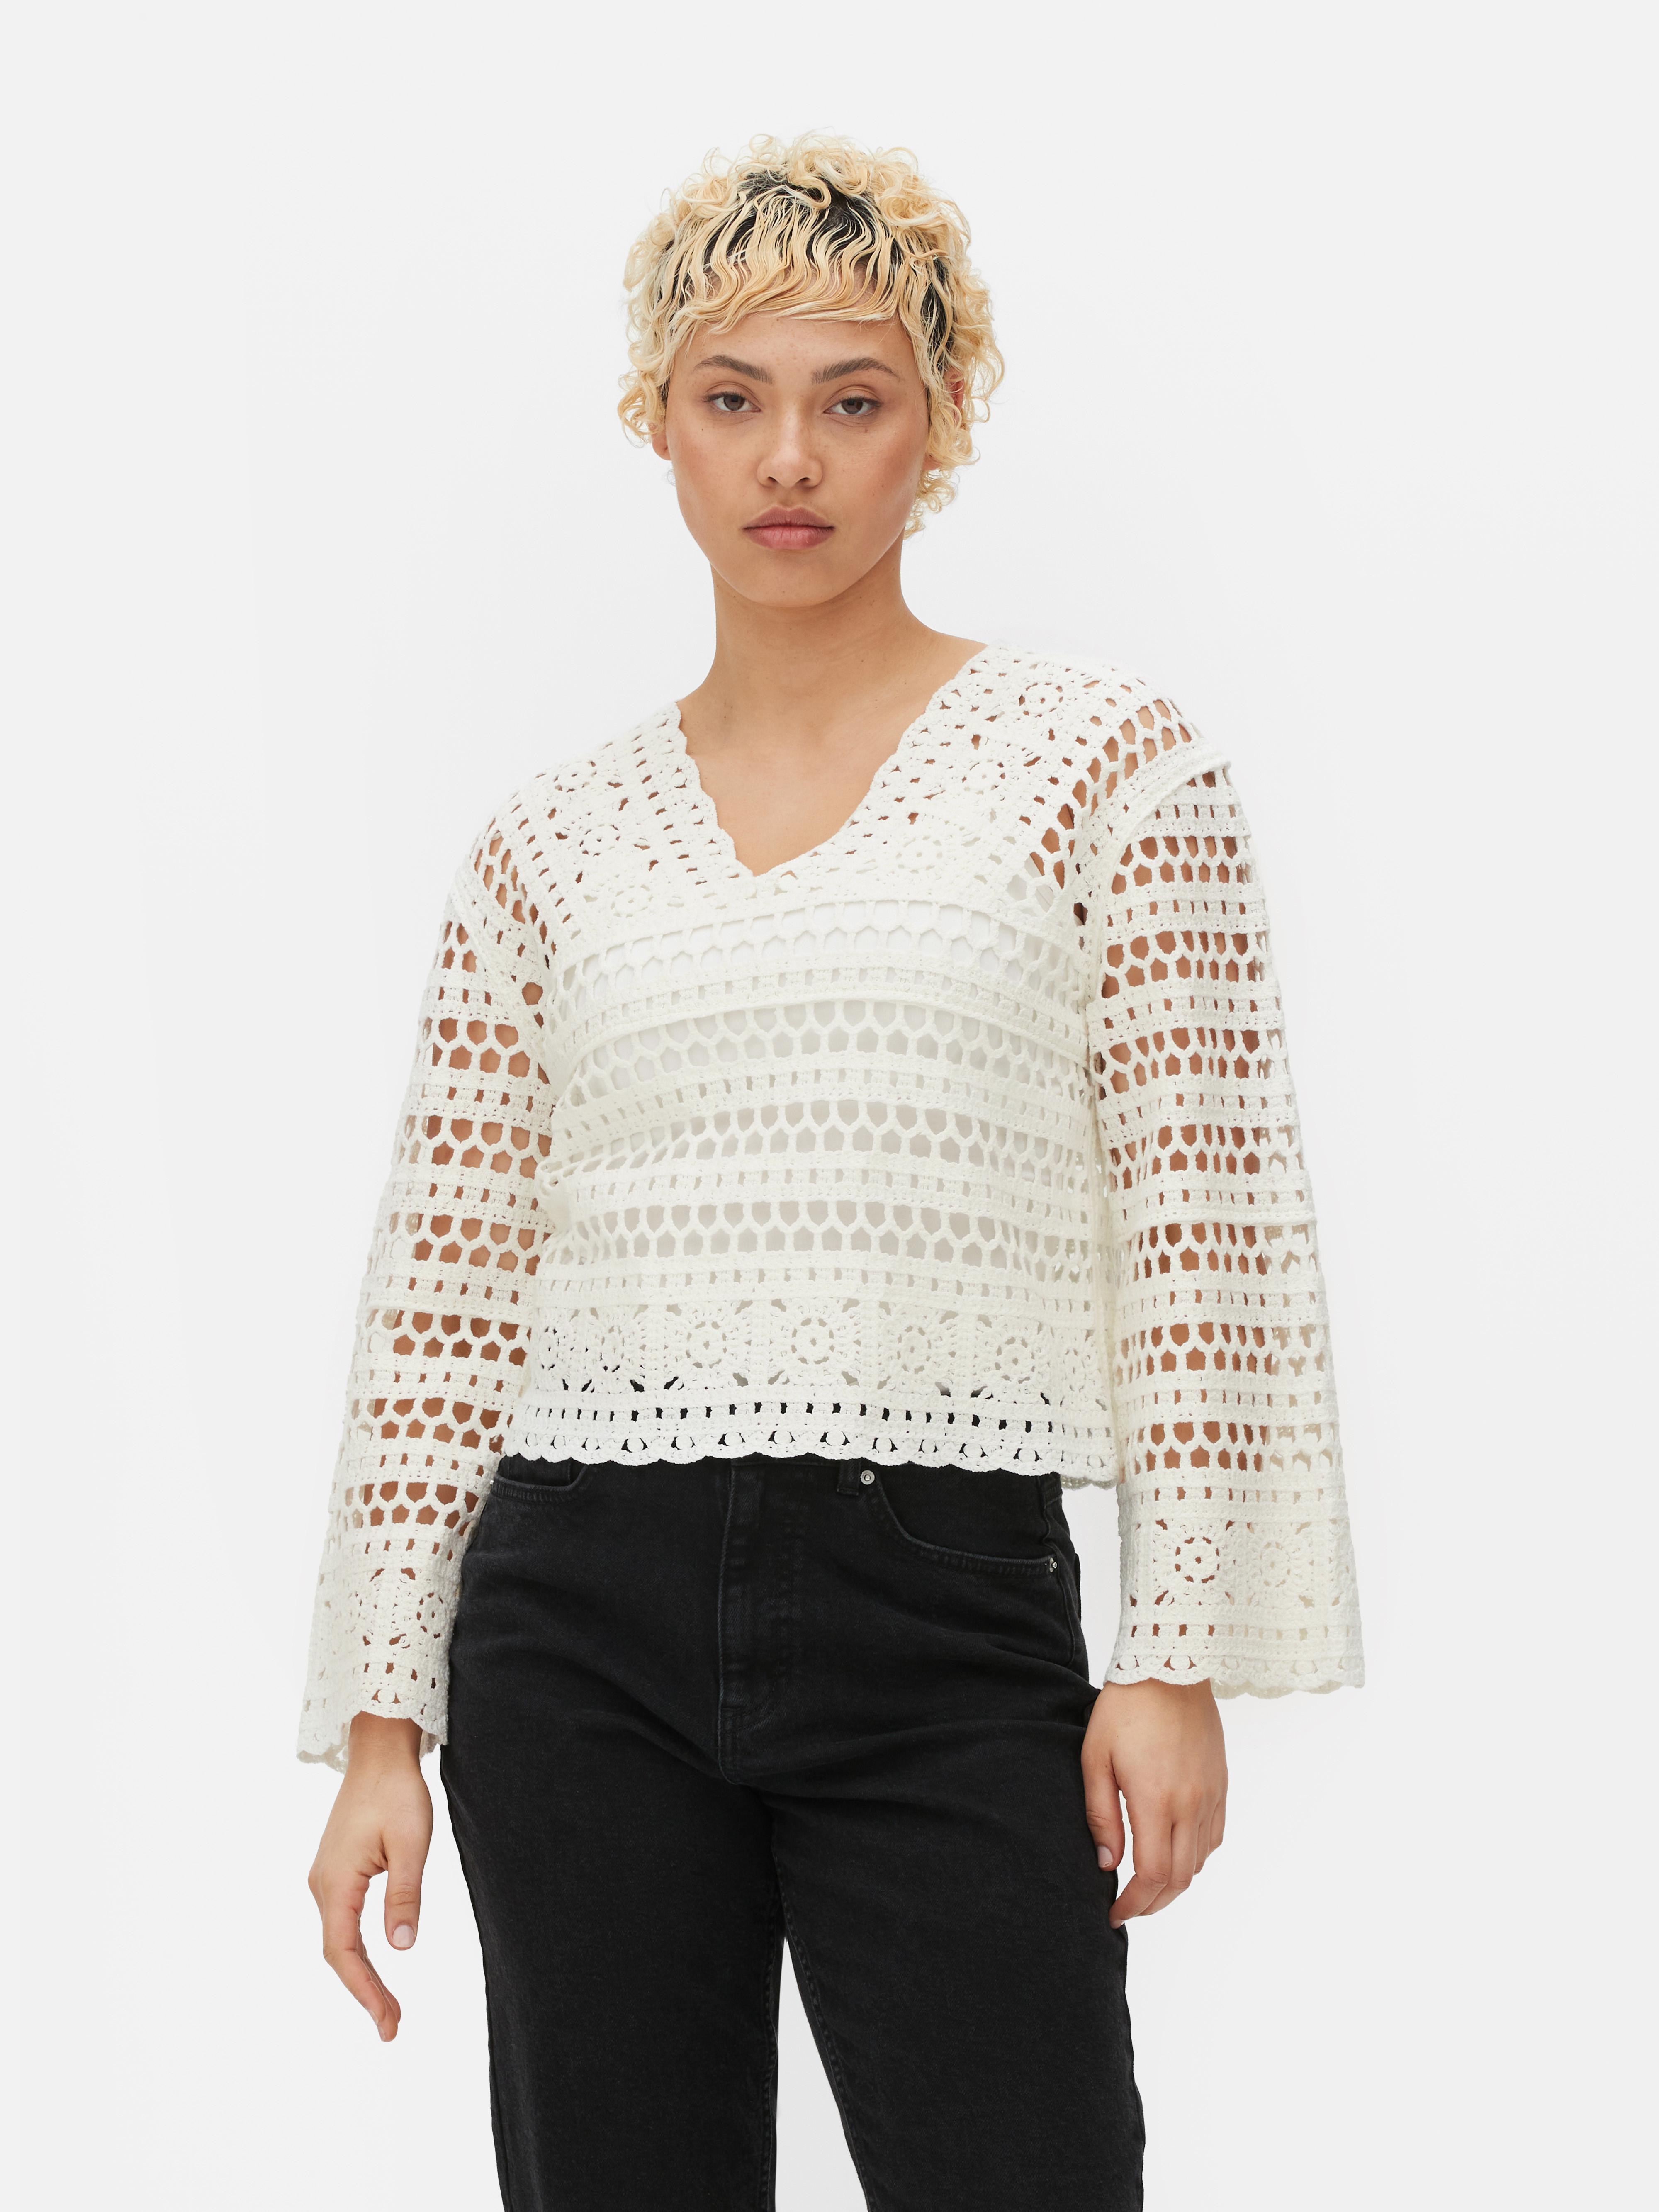 Women's Sweaters & Cardigans | Women's Long & Knitted Sweaters